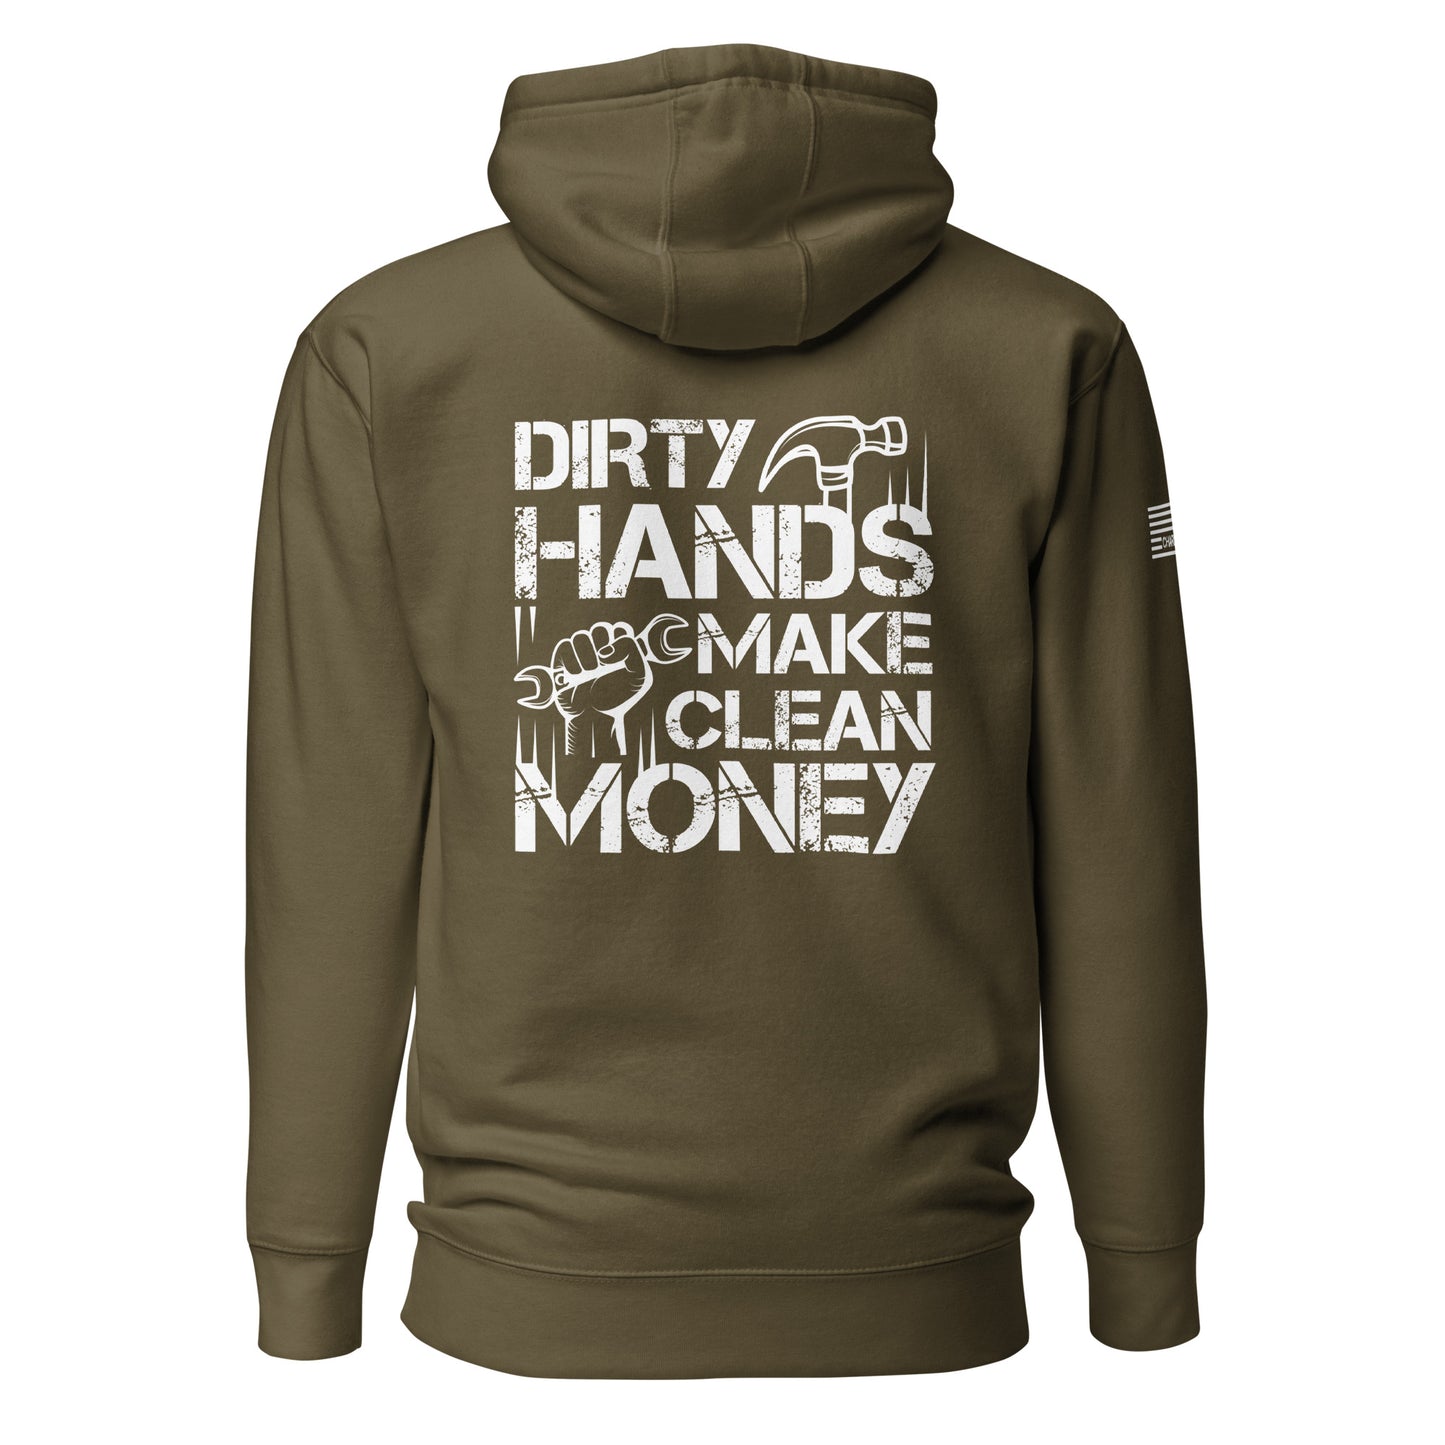 Dirty Hands Make Clean Money Unisex Hoodie